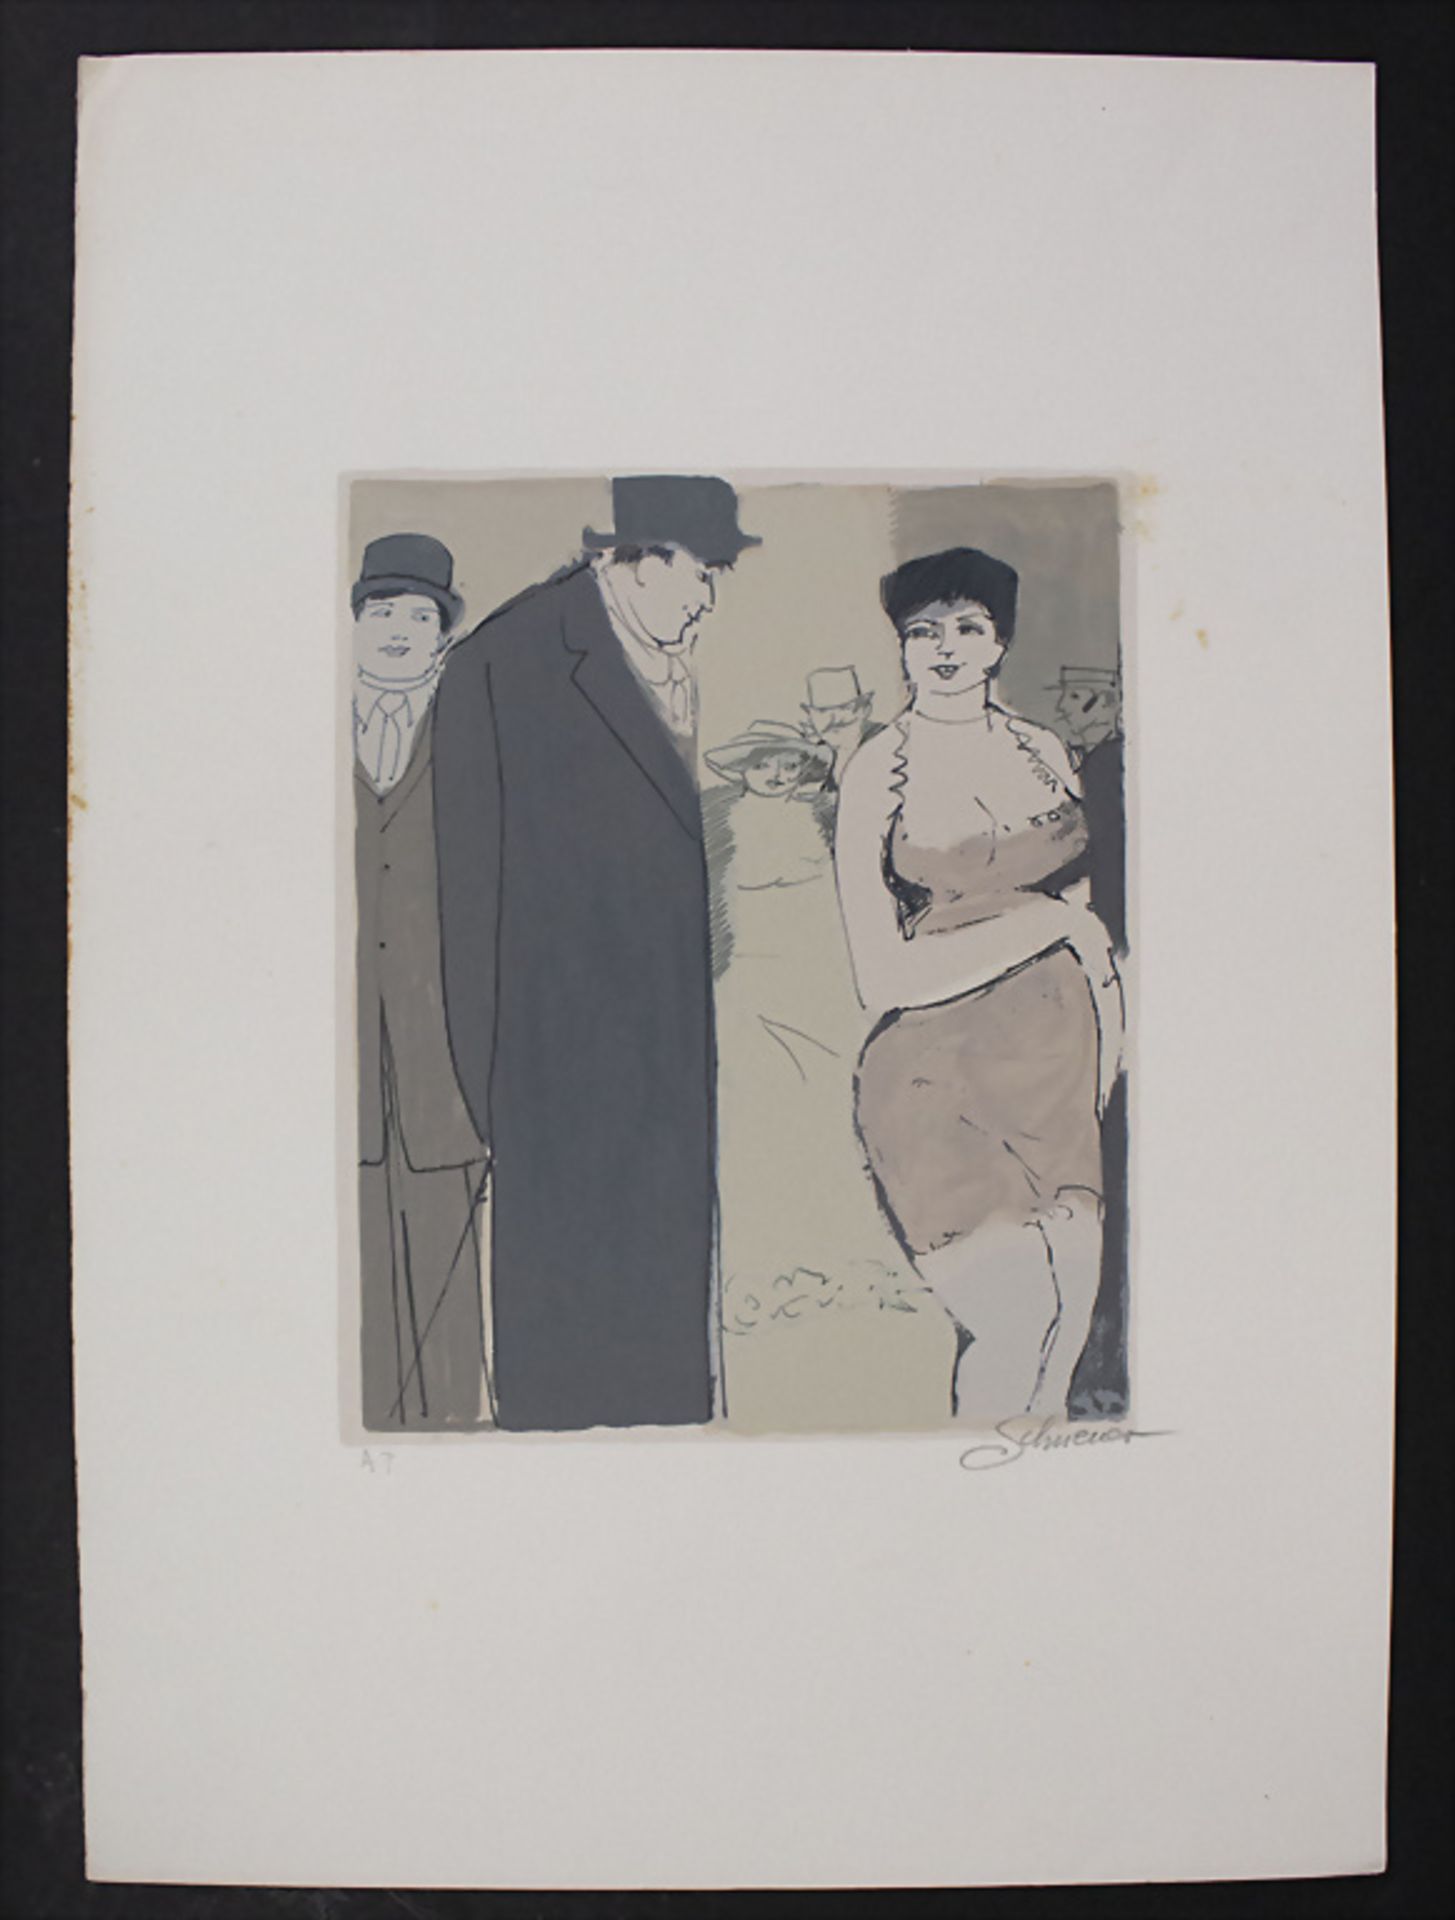 David SCHNEUER (1905-1988), 'Intensive Blicke' / 'Intense looks', 20. Jh. - Bild 2 aus 4